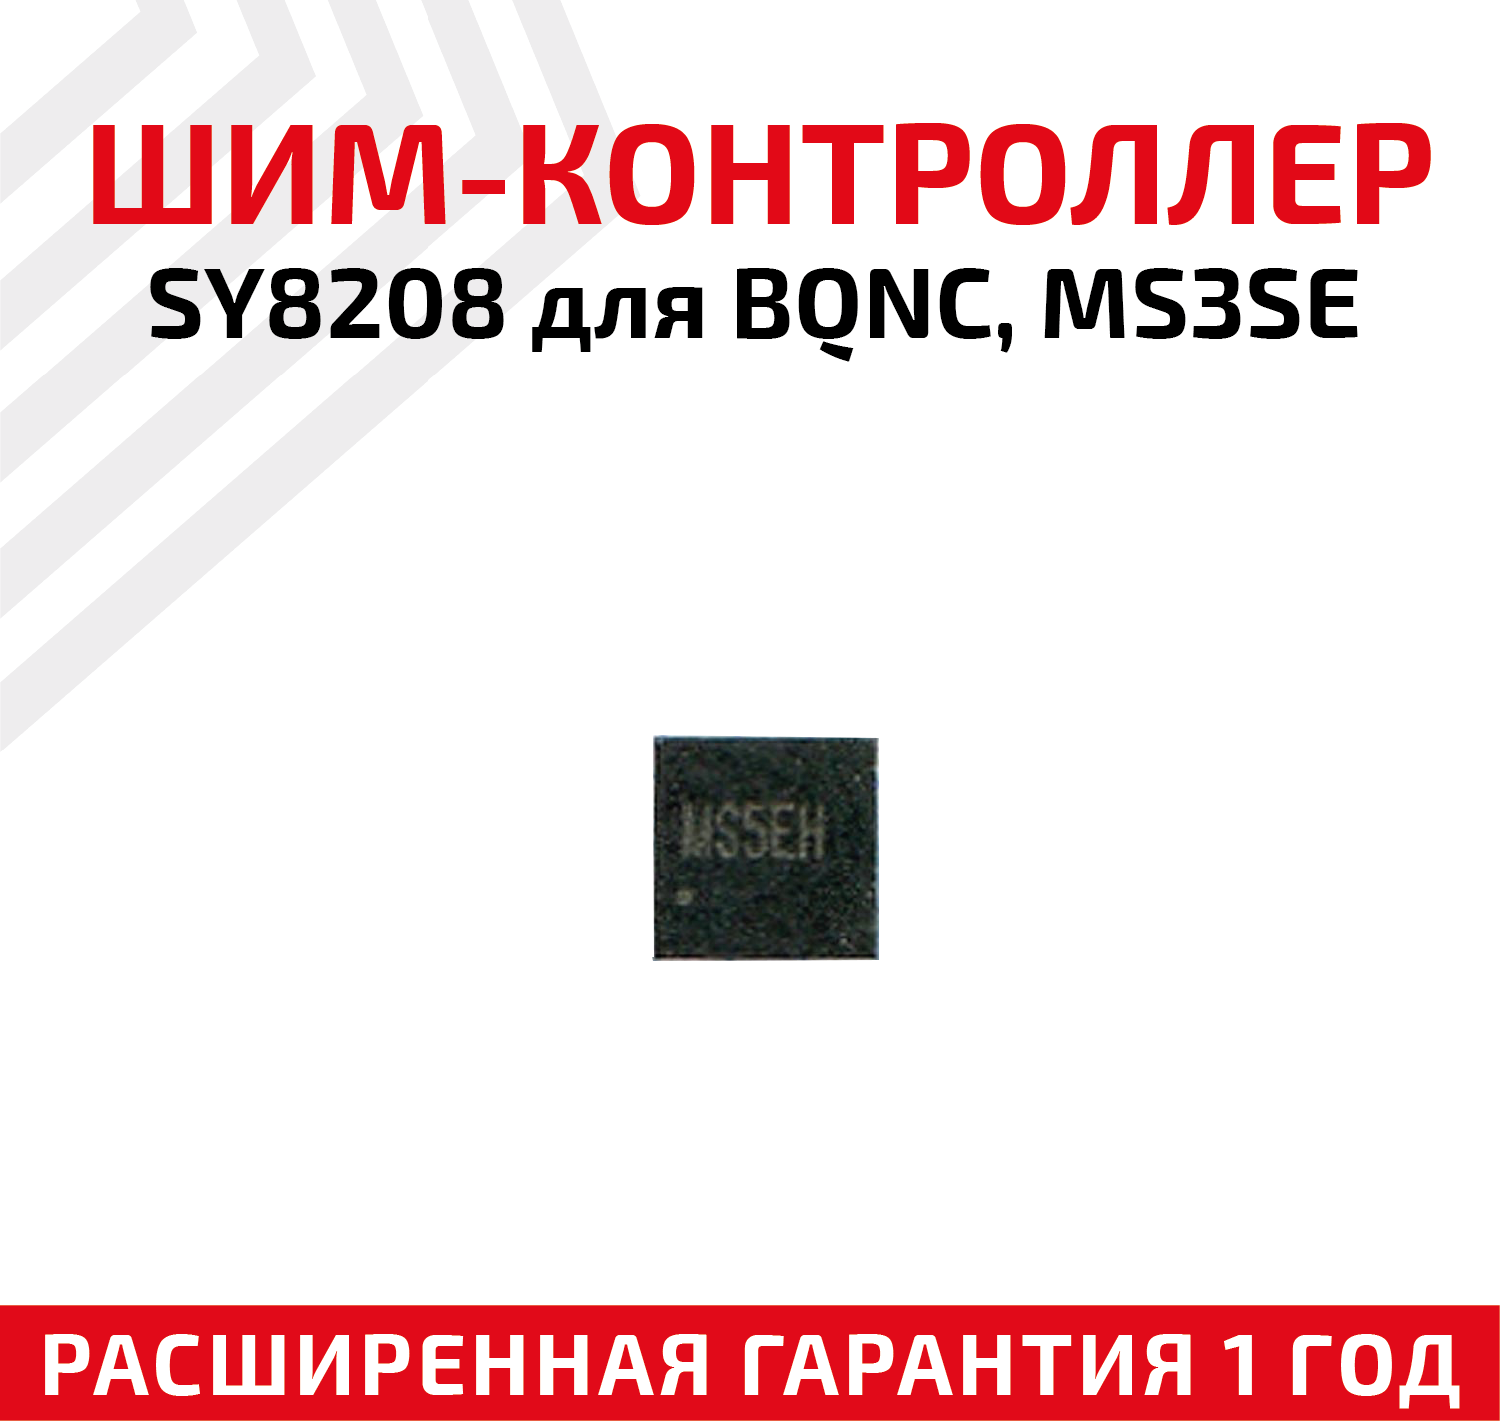 Шим-контроллер SY8208 для BQNC MS3SE